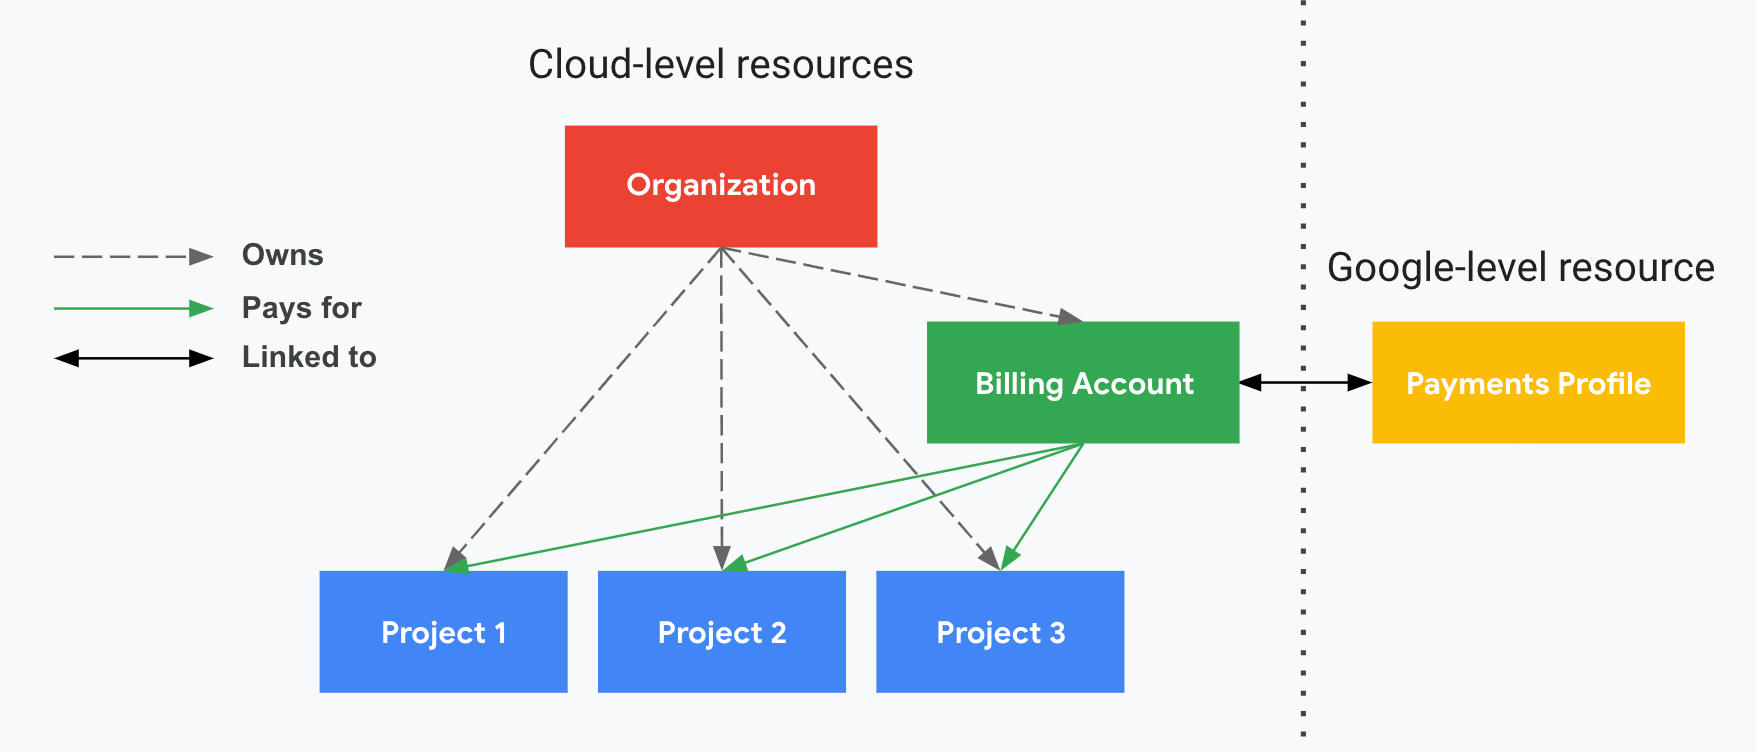 プロジェクトが Cloud 請求先アカウント、組織、Google お支払いプロファイルとどのように関連しているかを示します。縦の破線で区切られた一方には Google Cloud レベルのリソース（組織、Cloud 請求先アカウントと関連付けられたプロジェクト）が示され、もう一方には Google レベルのリソース（Google お支払いプロファイル）が示されています。プロジェクトの費用は、Google お支払いプロファイルにリンクされている Cloud 請求先アカウントに請求されます。この組織は、IAM を使用して Cloud 請求先アカウントの所有権を管理します。